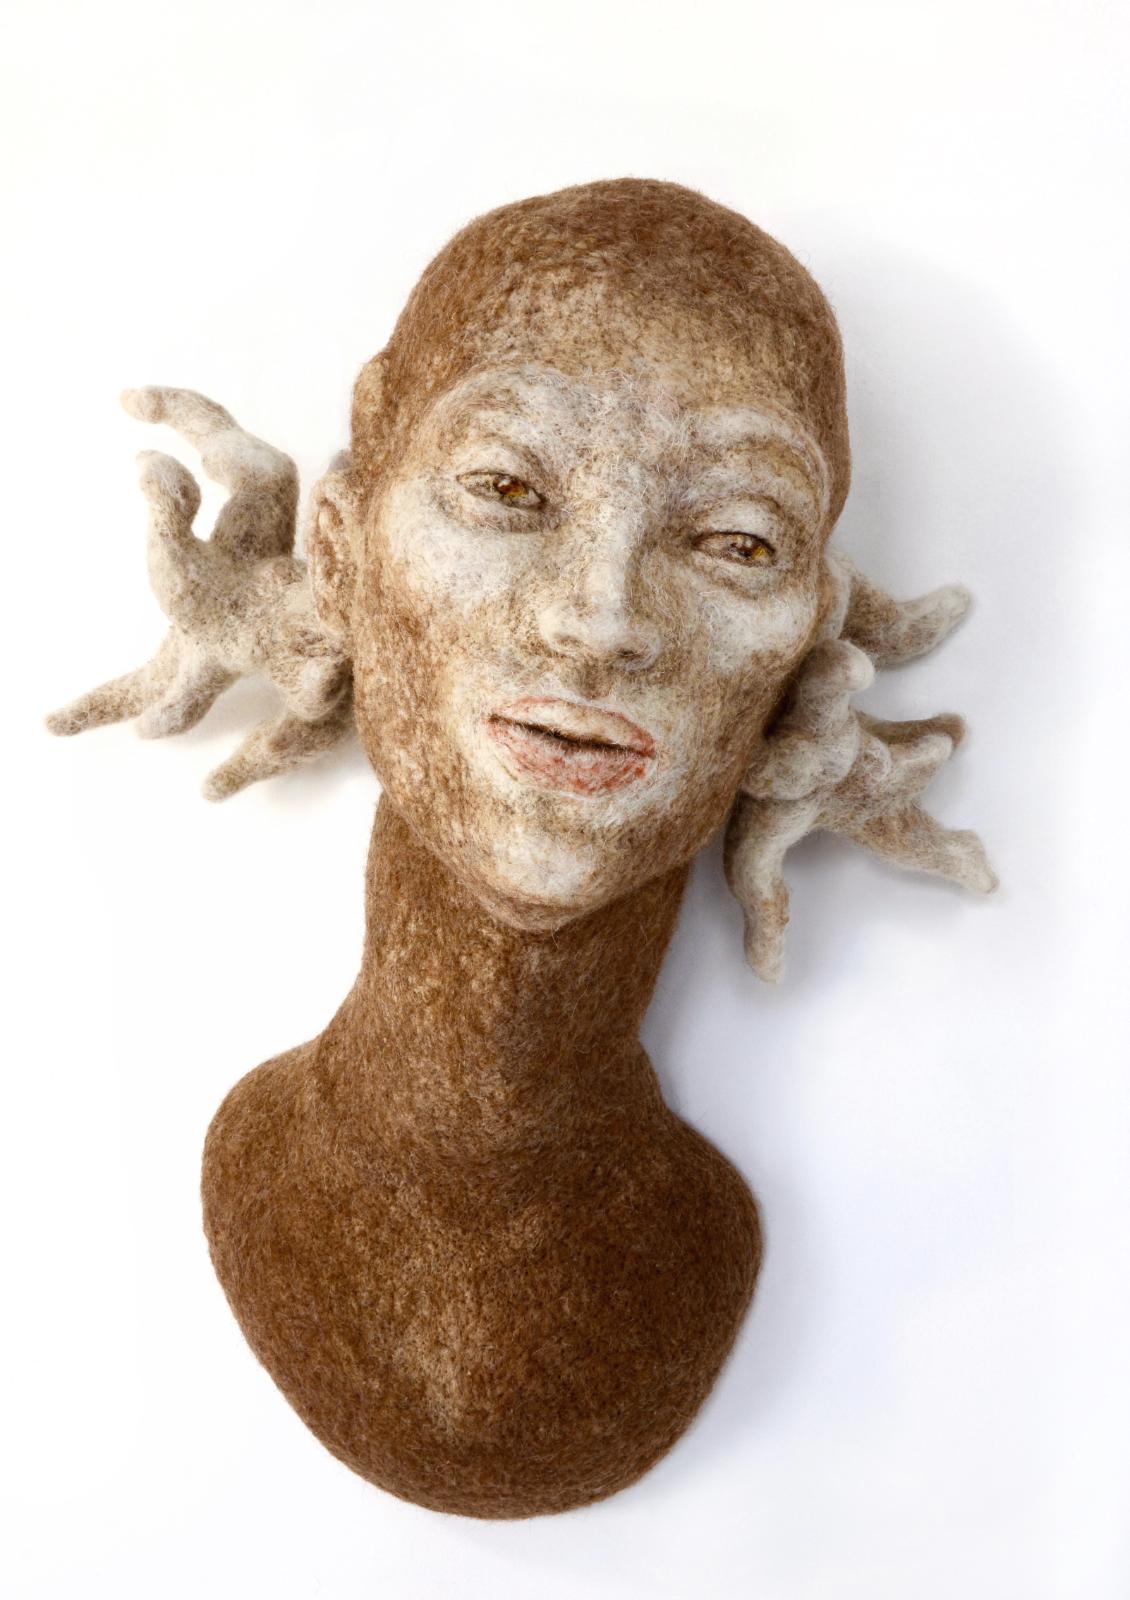 Stefanie Ehrenfried, O. T. (Olm), 2015, Schafwolle, nadelgefilzt, 57 cm x 48 cm x 25 cm, Preis auf Anfrage